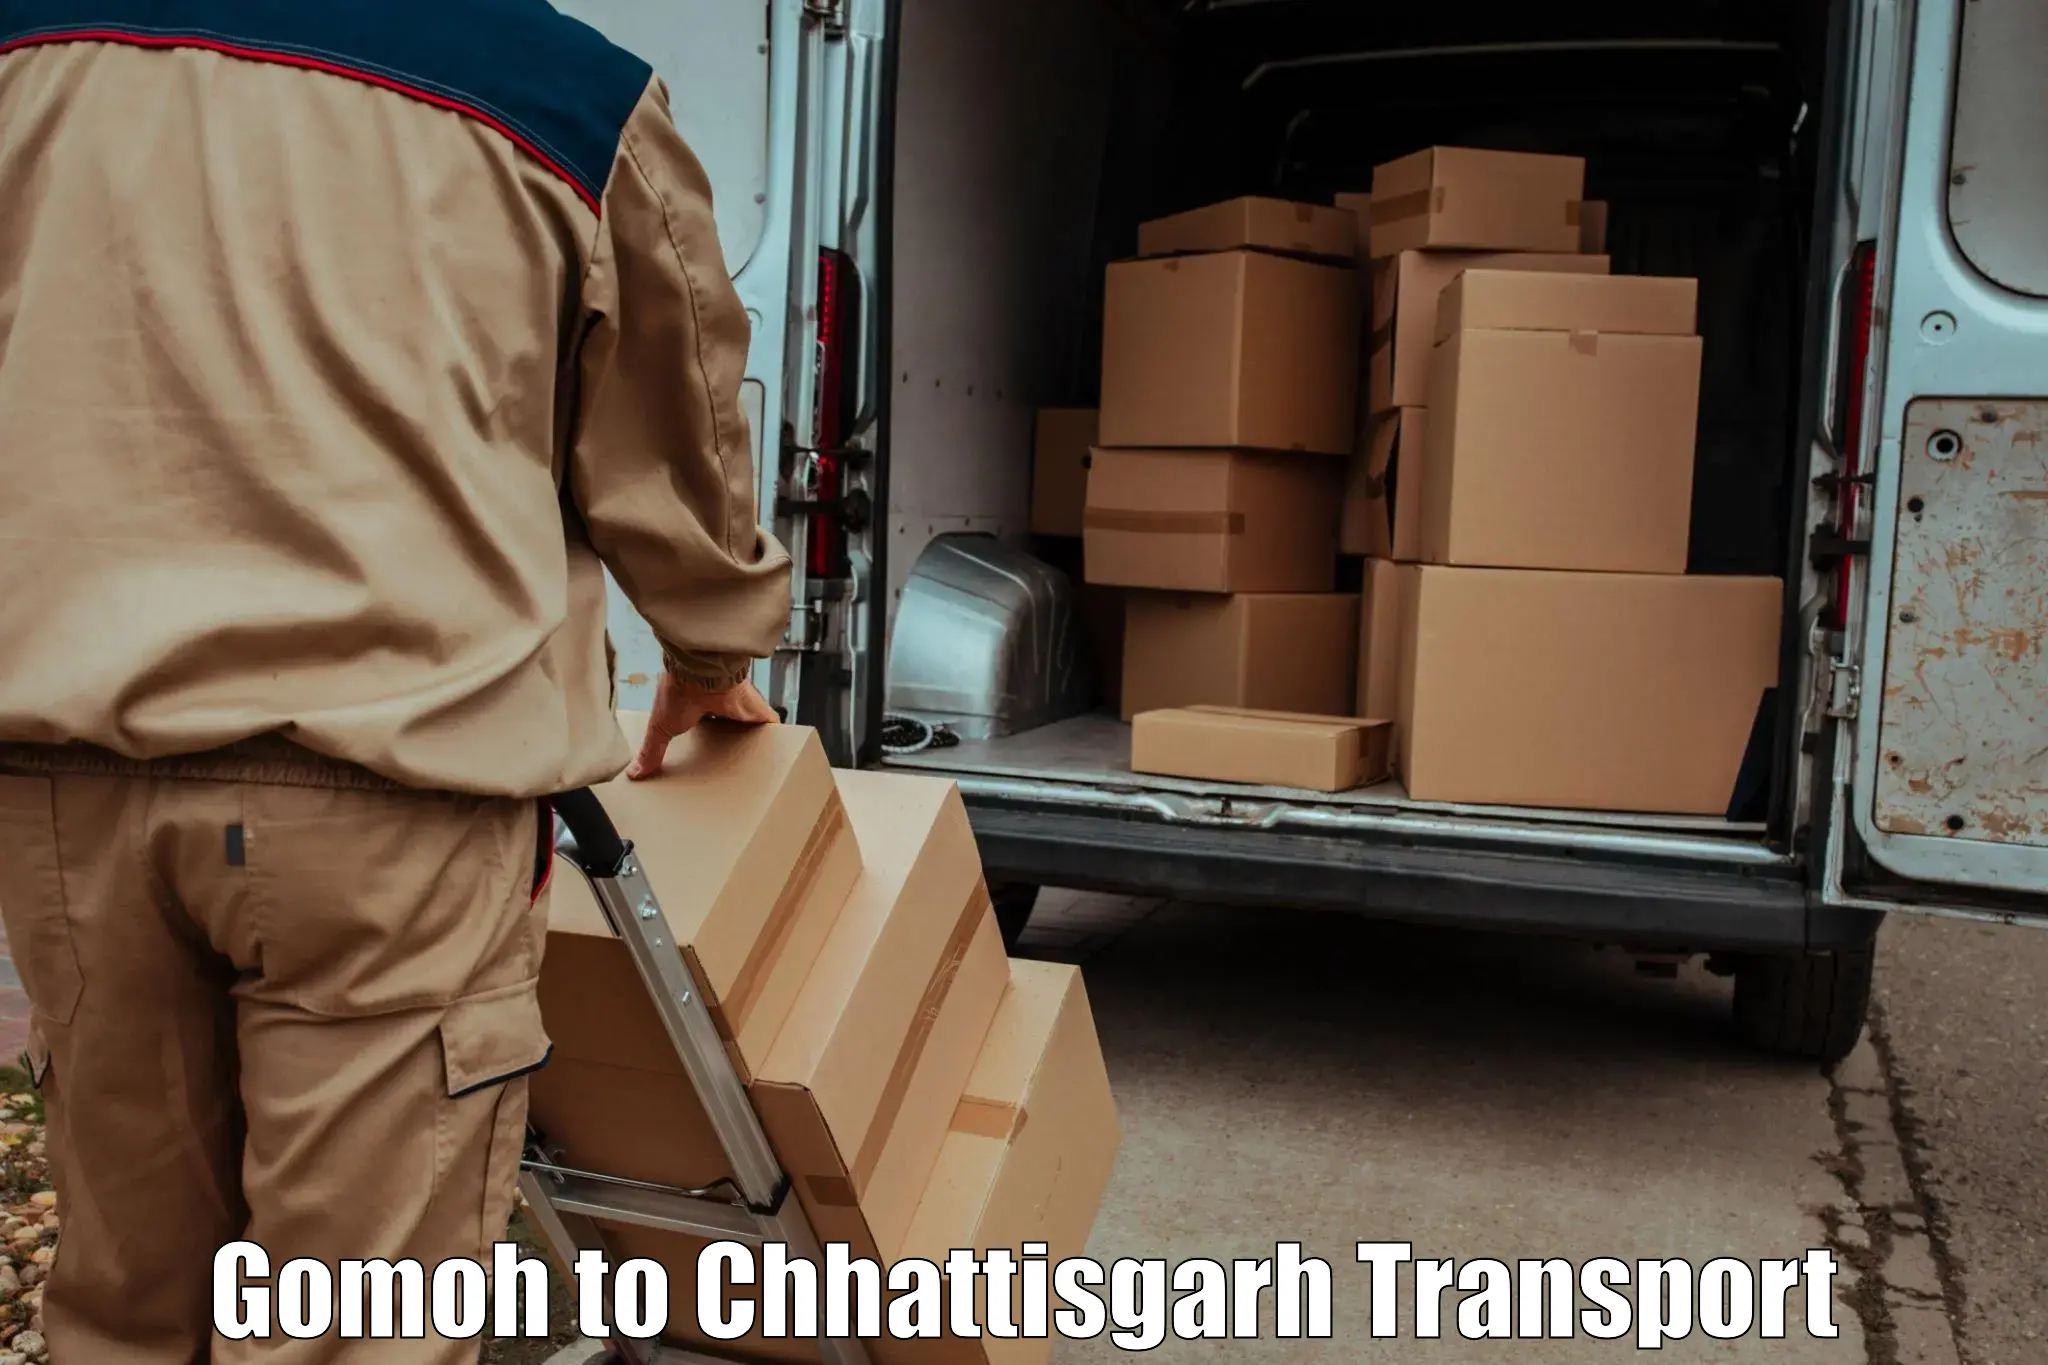 Road transport online services Gomoh to Mandhar